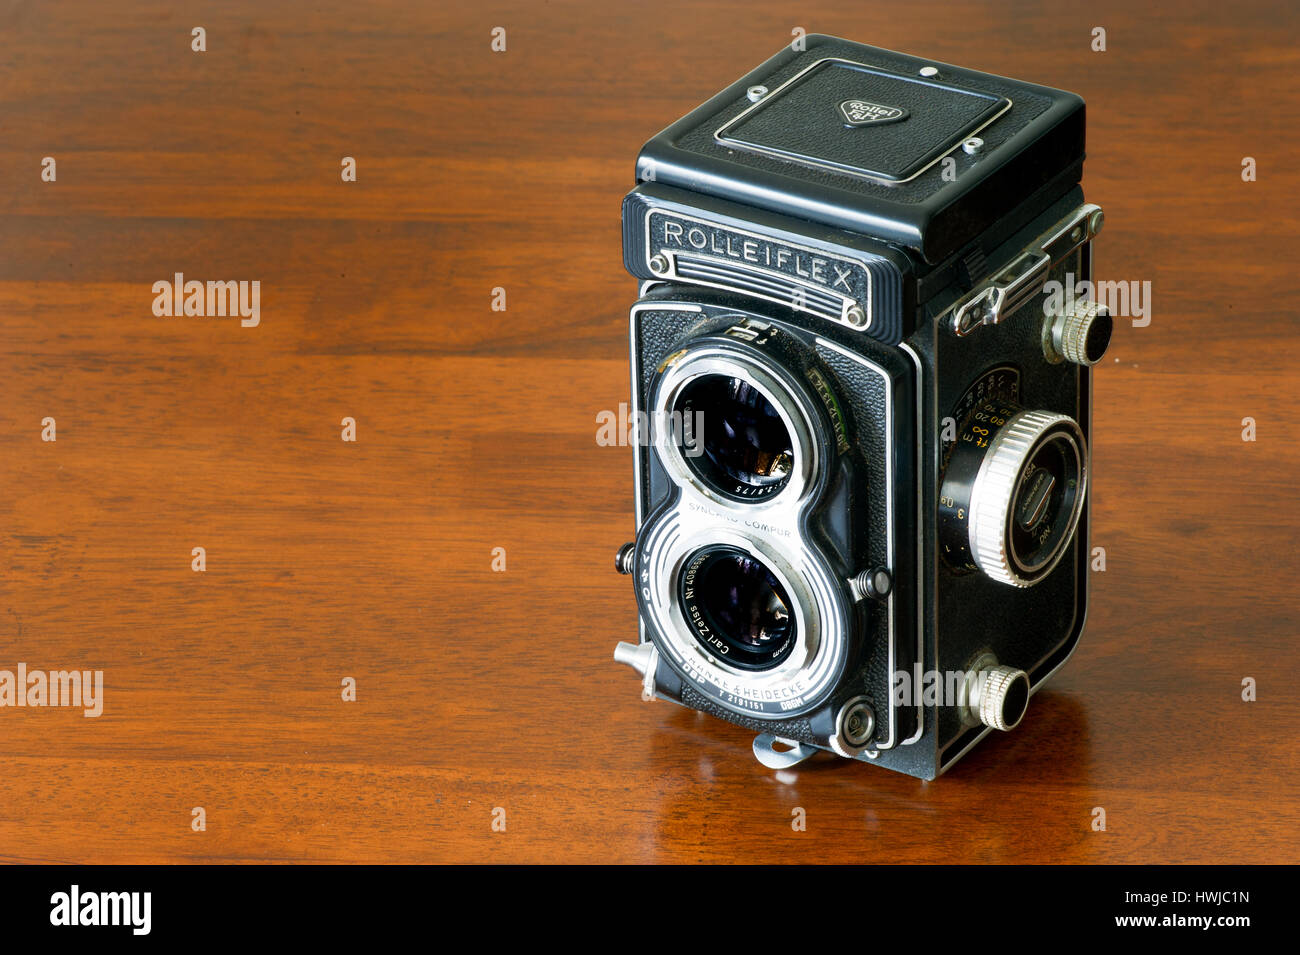 Vintage catalogue bioptical encore sur la vie de l'appareil photo Rolleiflex table en bois Banque D'Images